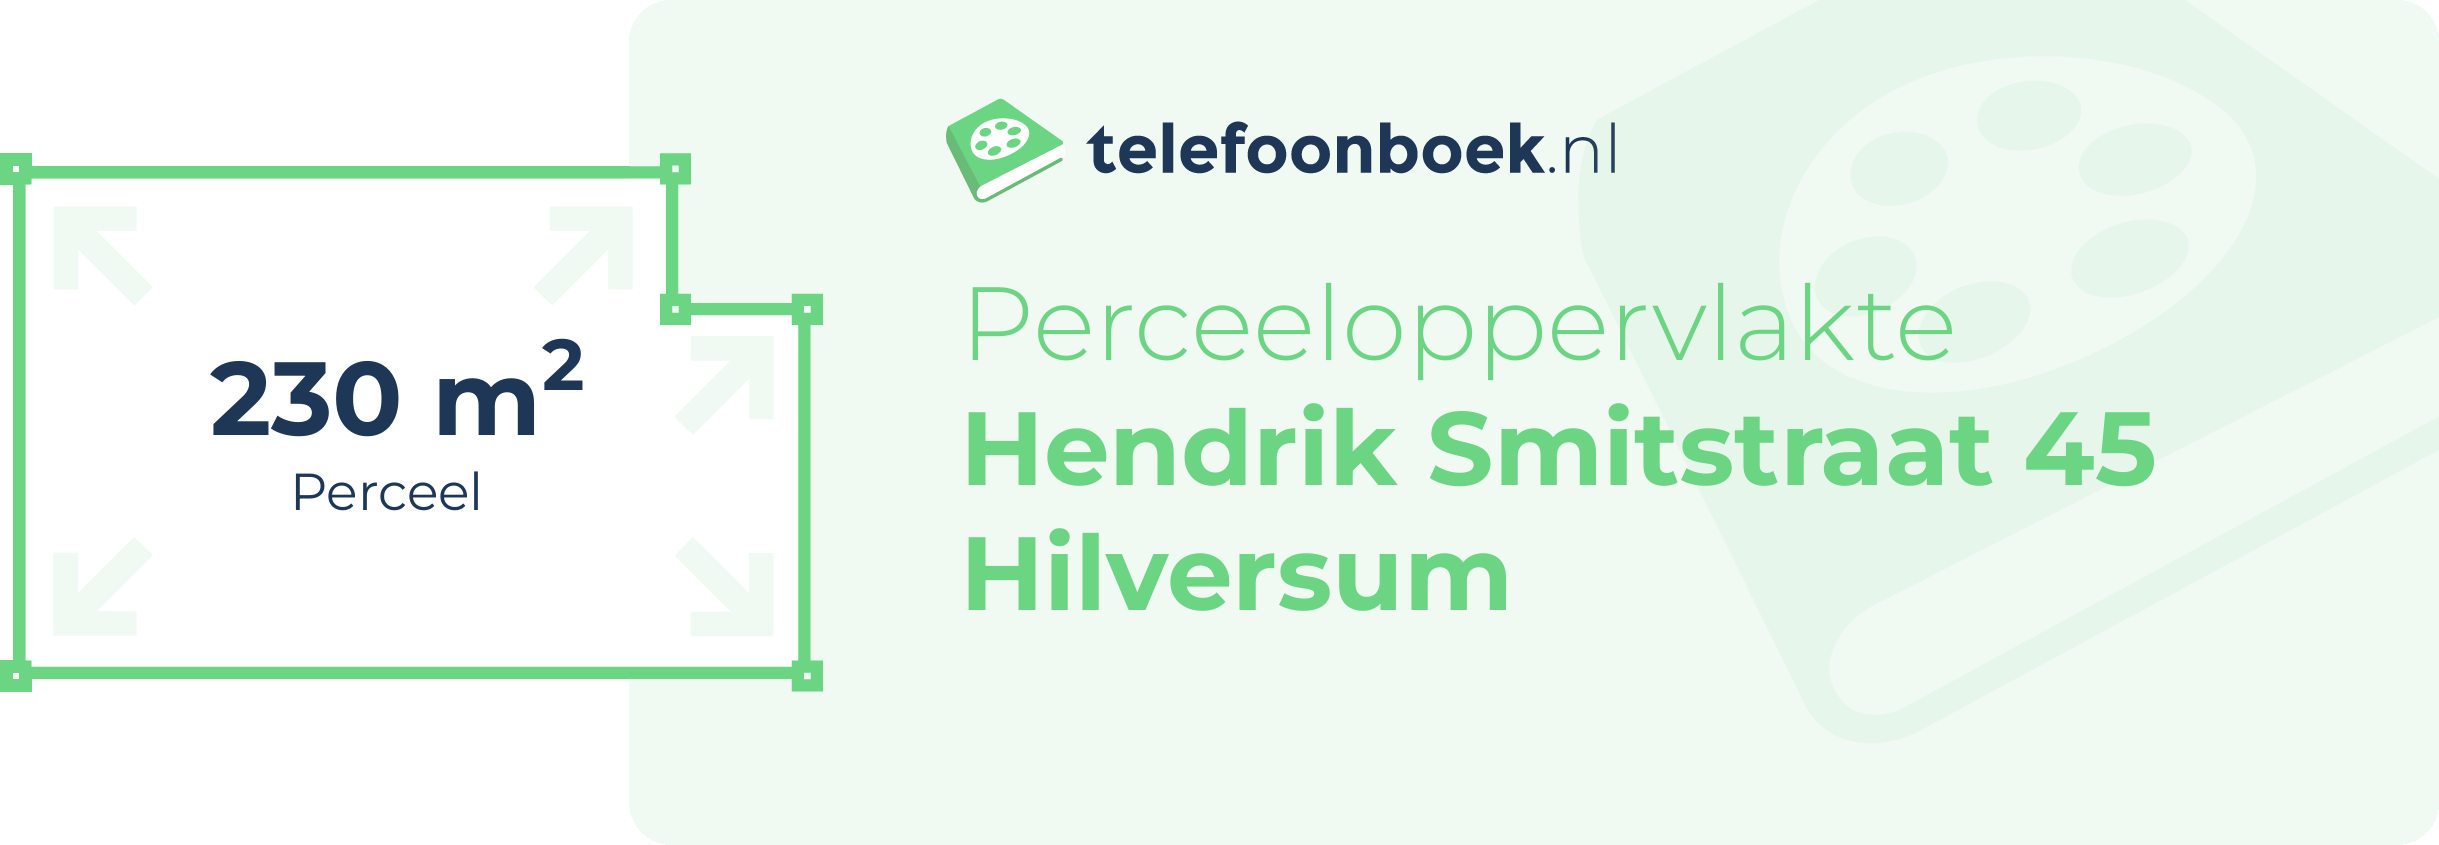 Perceeloppervlakte Hendrik Smitstraat 45 Hilversum